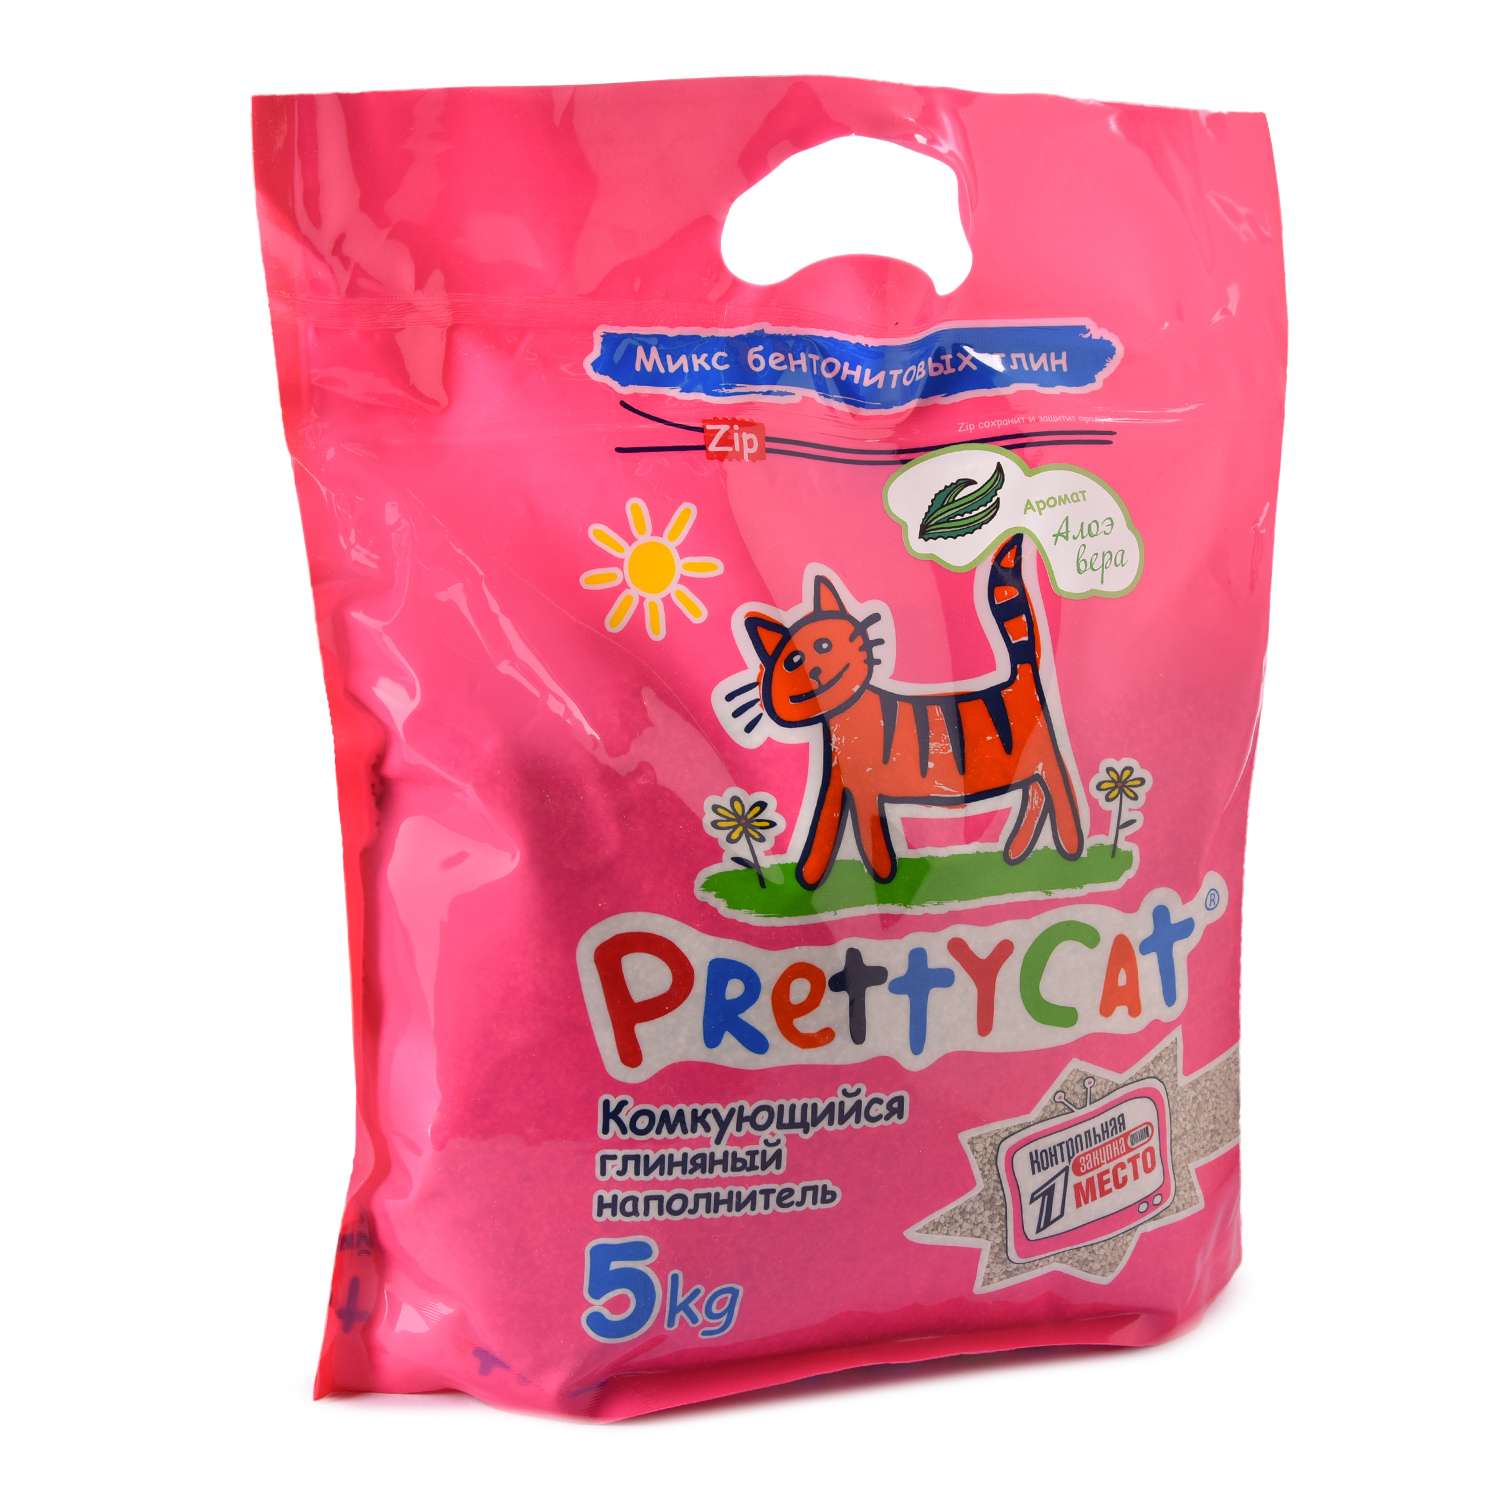 Наполнитель для кошек PrettyCat Euro Mix комкующийся с ароматом алоэ 5кг - фото 3